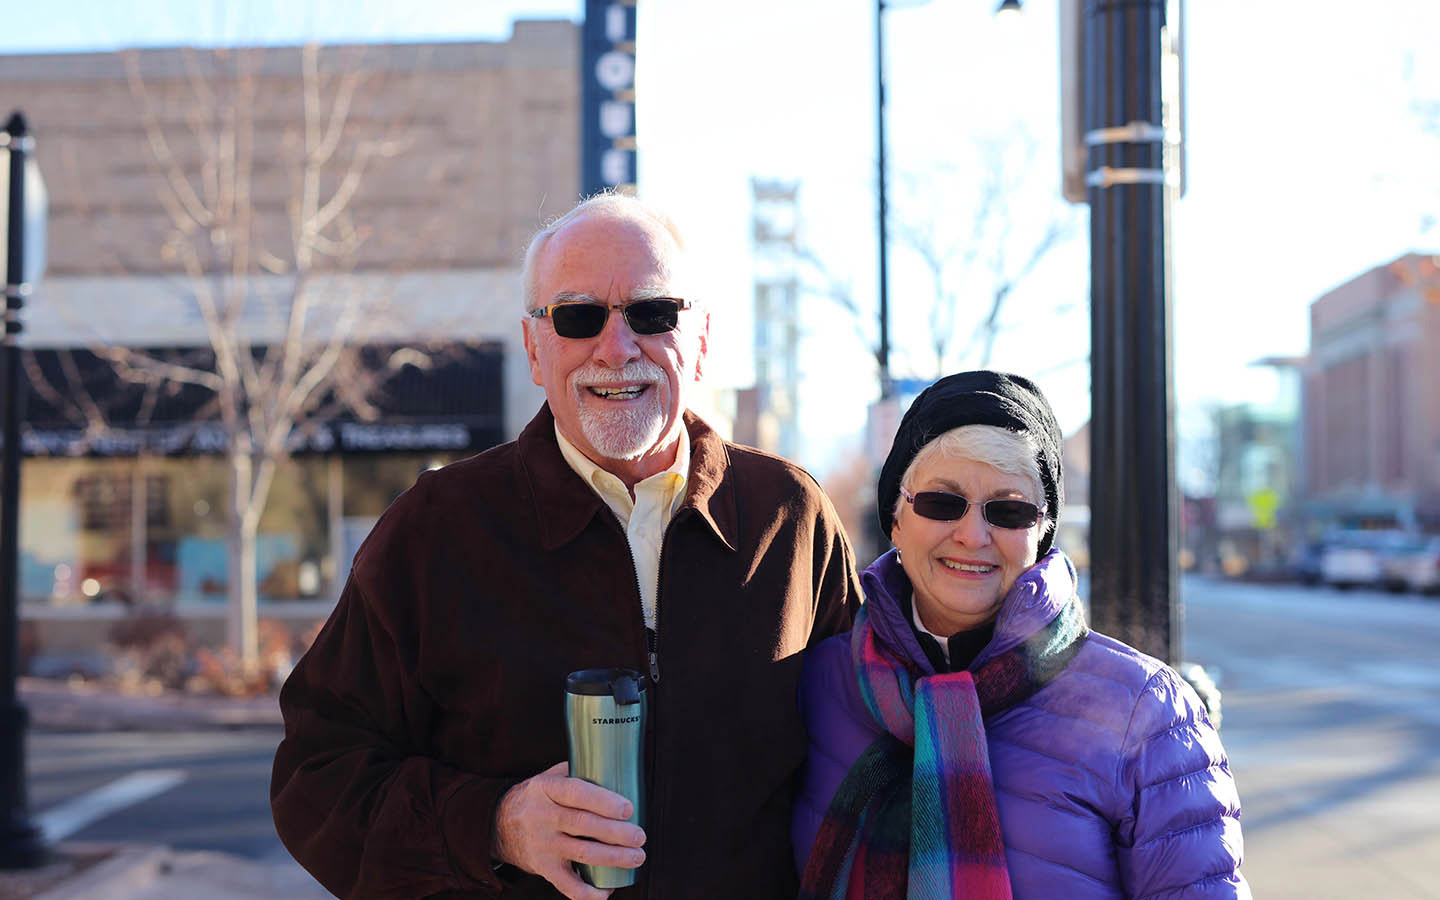 人工耳蝸植入者 Tom 和他的妻子 Brenda 在街上拍照